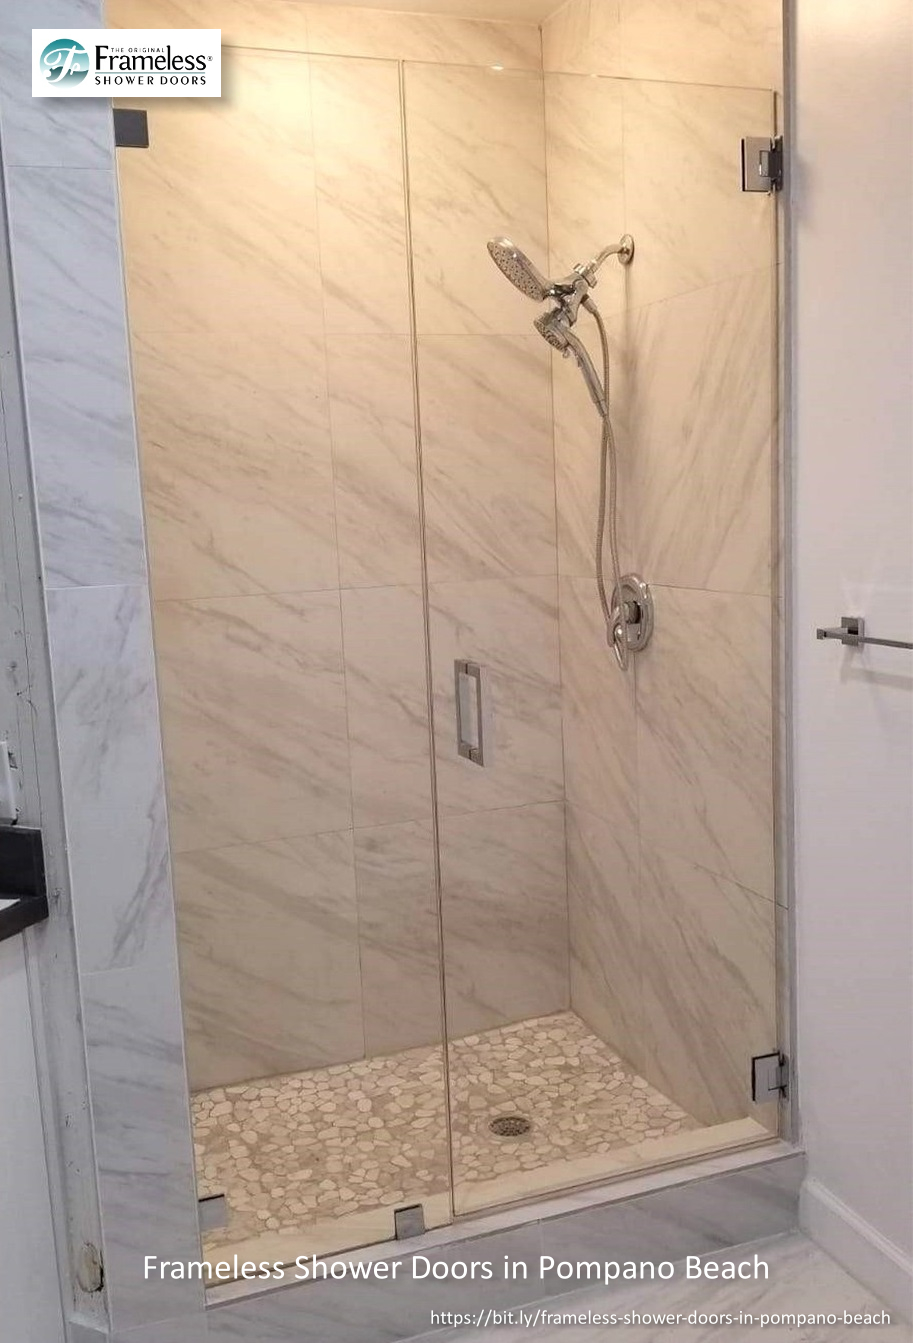 , High-Quality Frameless Shower Doors in Pompano Beach, Florida, Frameless Shower Doors